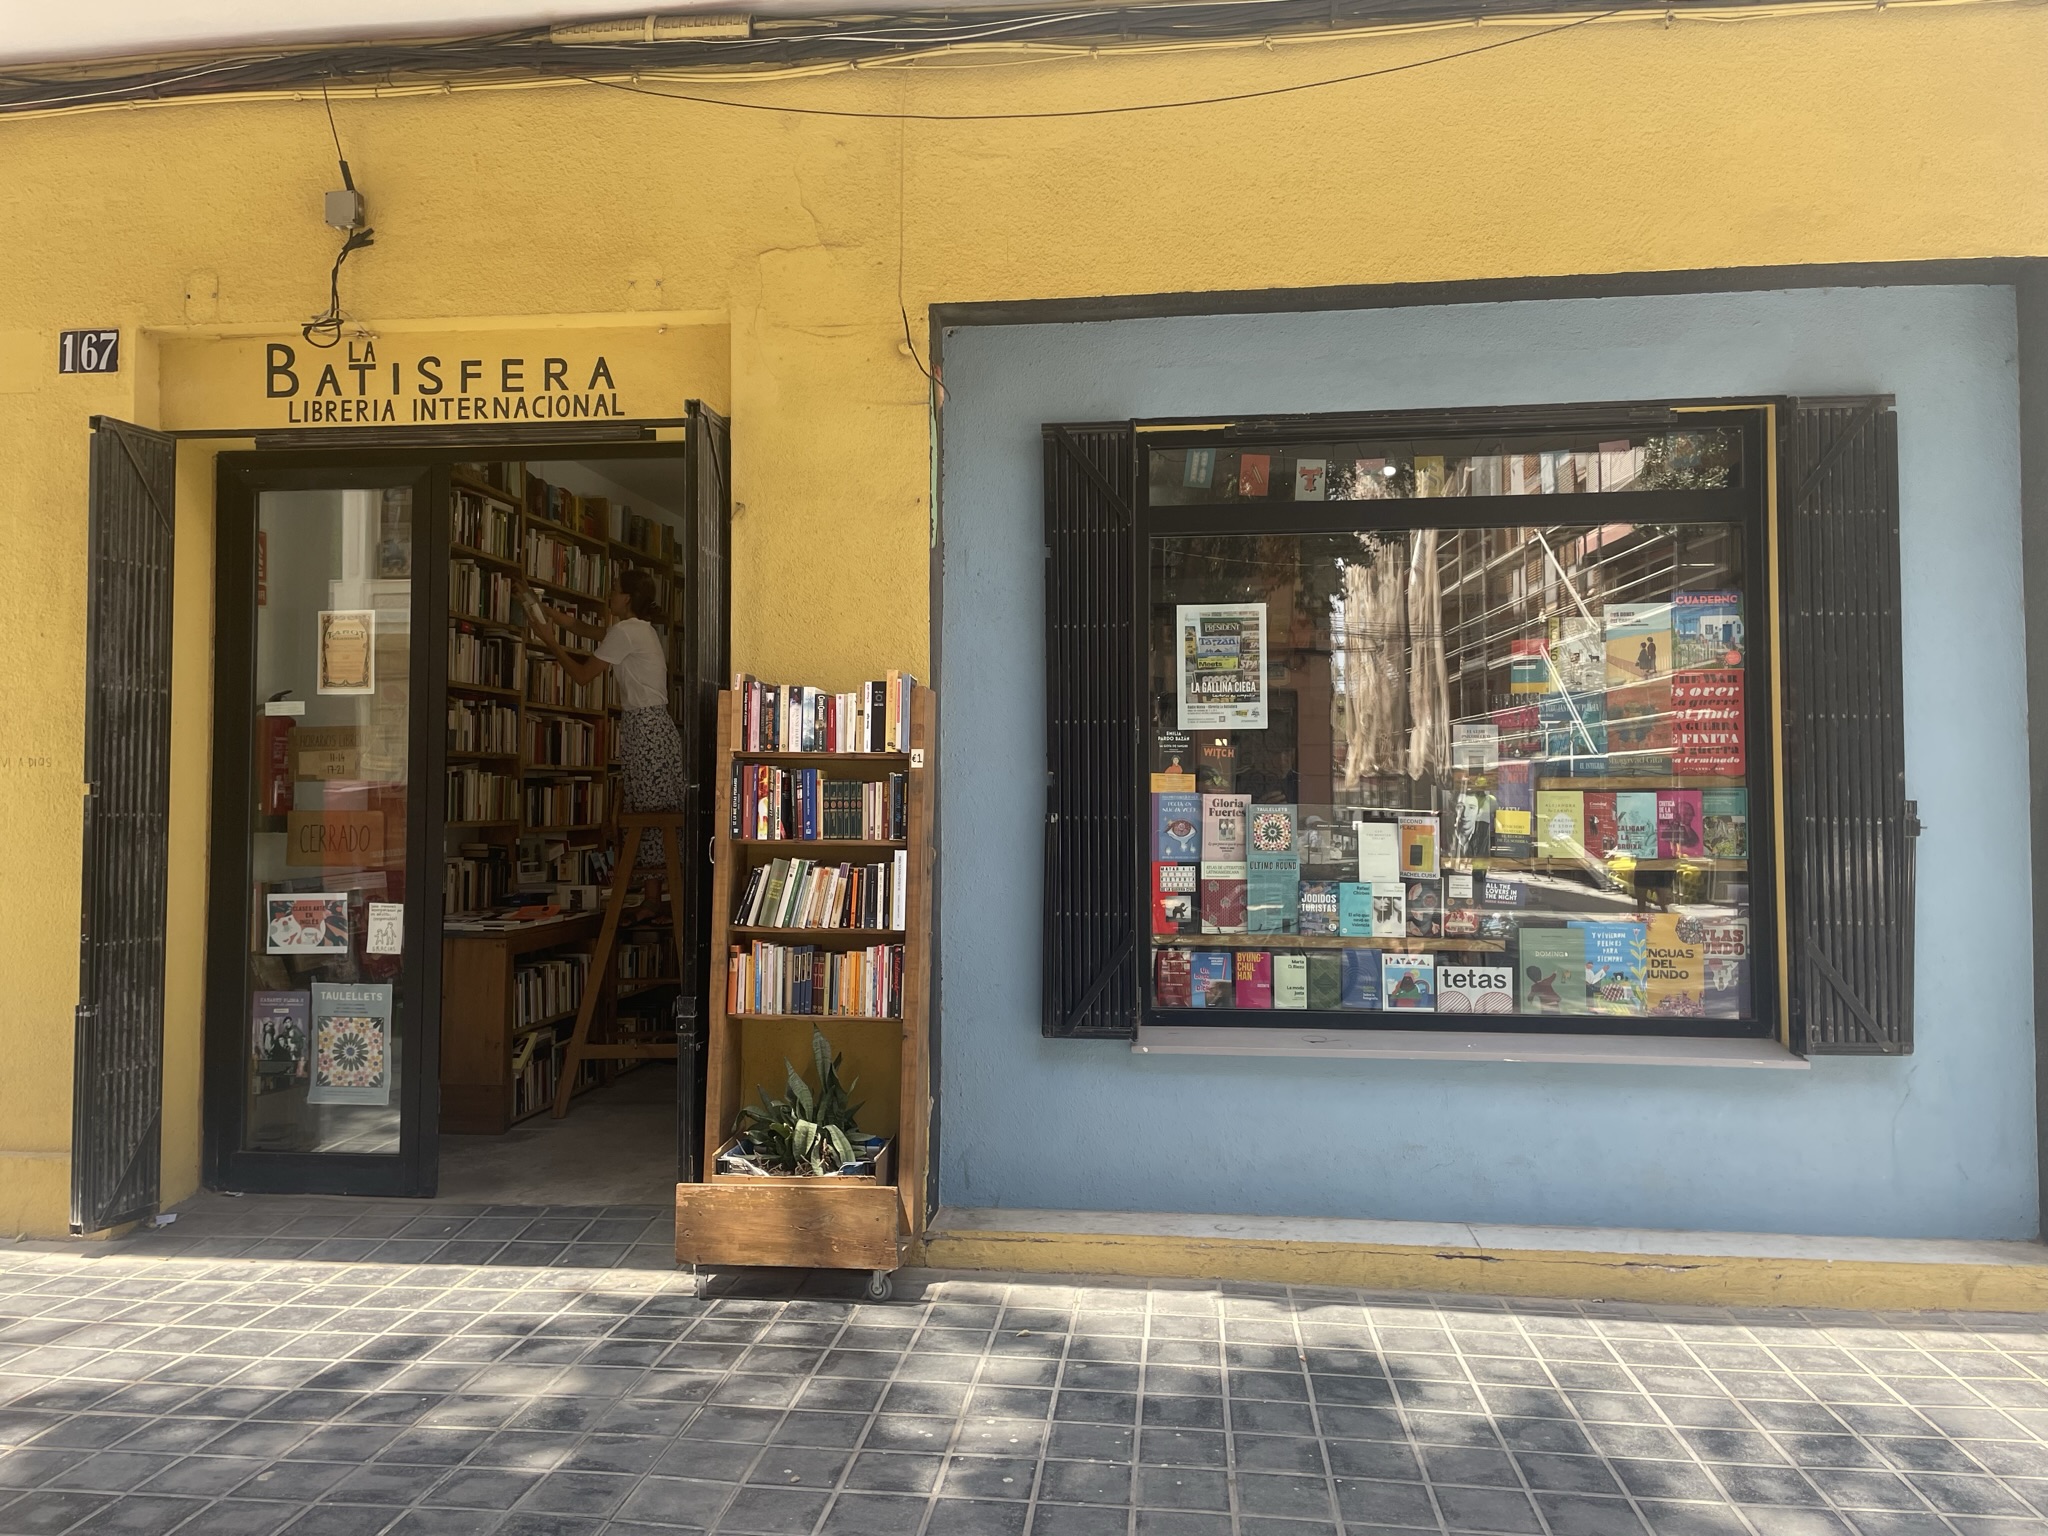 3 - In dieser internationalen Buchhandlung im Stadtteil El Cabanyal findet sich so manches gutes Buch auch in englischer Sprache.